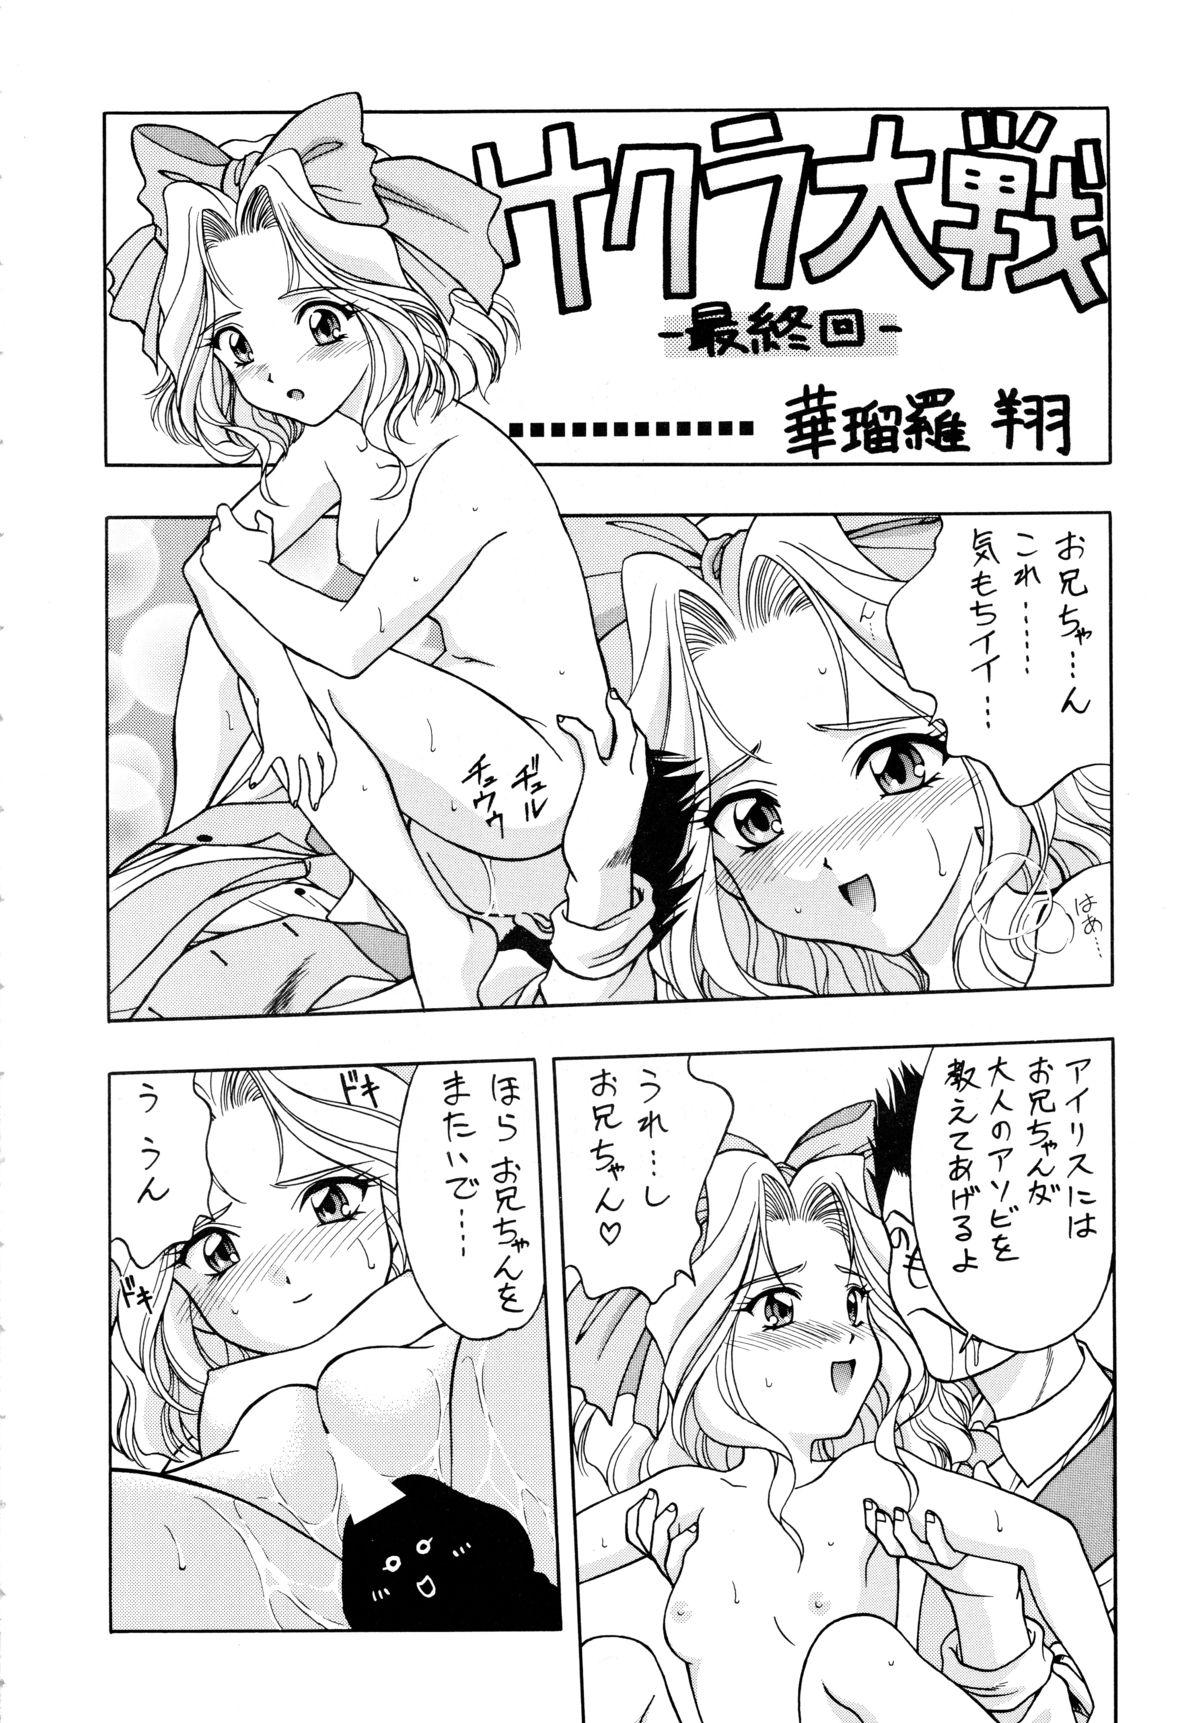 Dotado LOVE² BREATH - Sakura taisen Martian successor nadesico Tokimeki memorial Youre under arrest Amante - Page 4